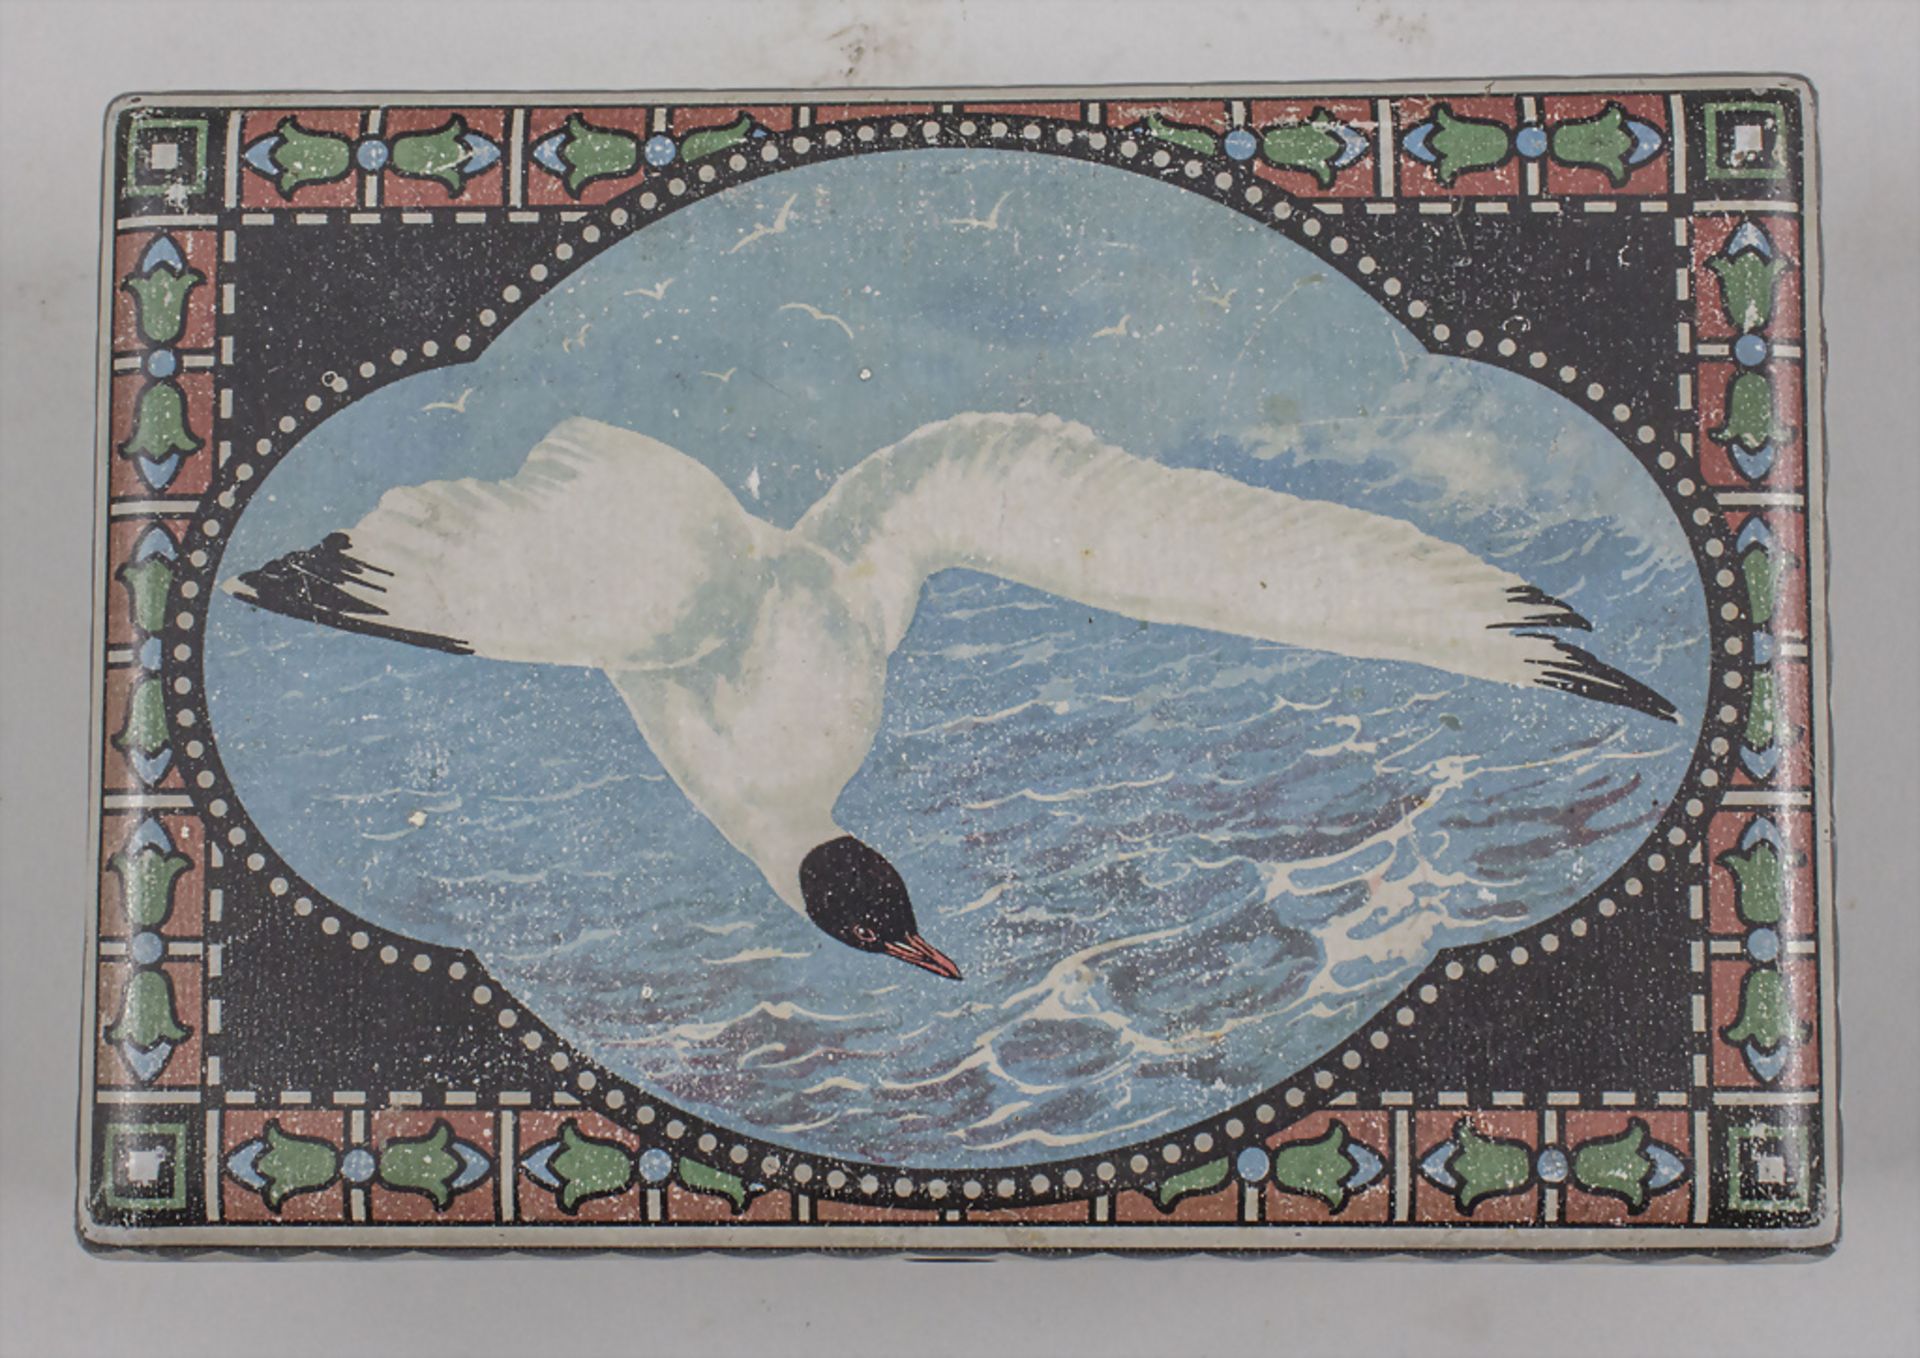 Jugendstil Keksdose mit Möwe / An Art Nouveau cookie jar with a black-headed gull, ... - Image 3 of 7